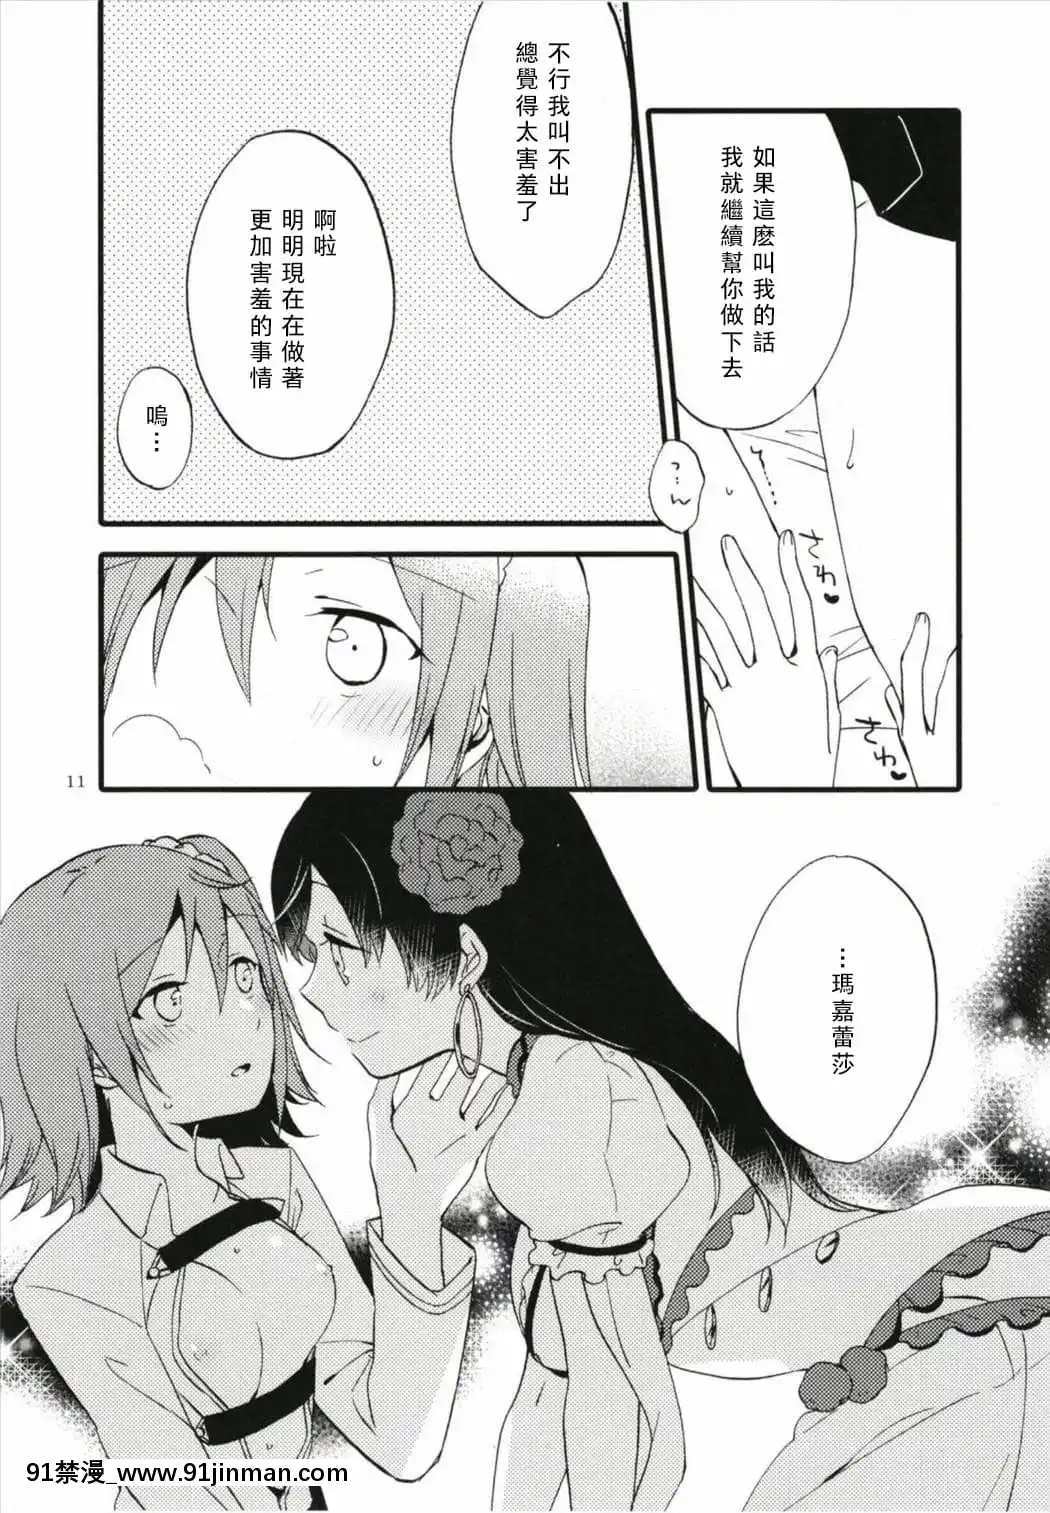 [Không có gì] [Niratama (Sekihara, Hiroto)] MG 001 (Fate╱GrandOrder)【truyện tranh 17 sai kiss to dilemma】